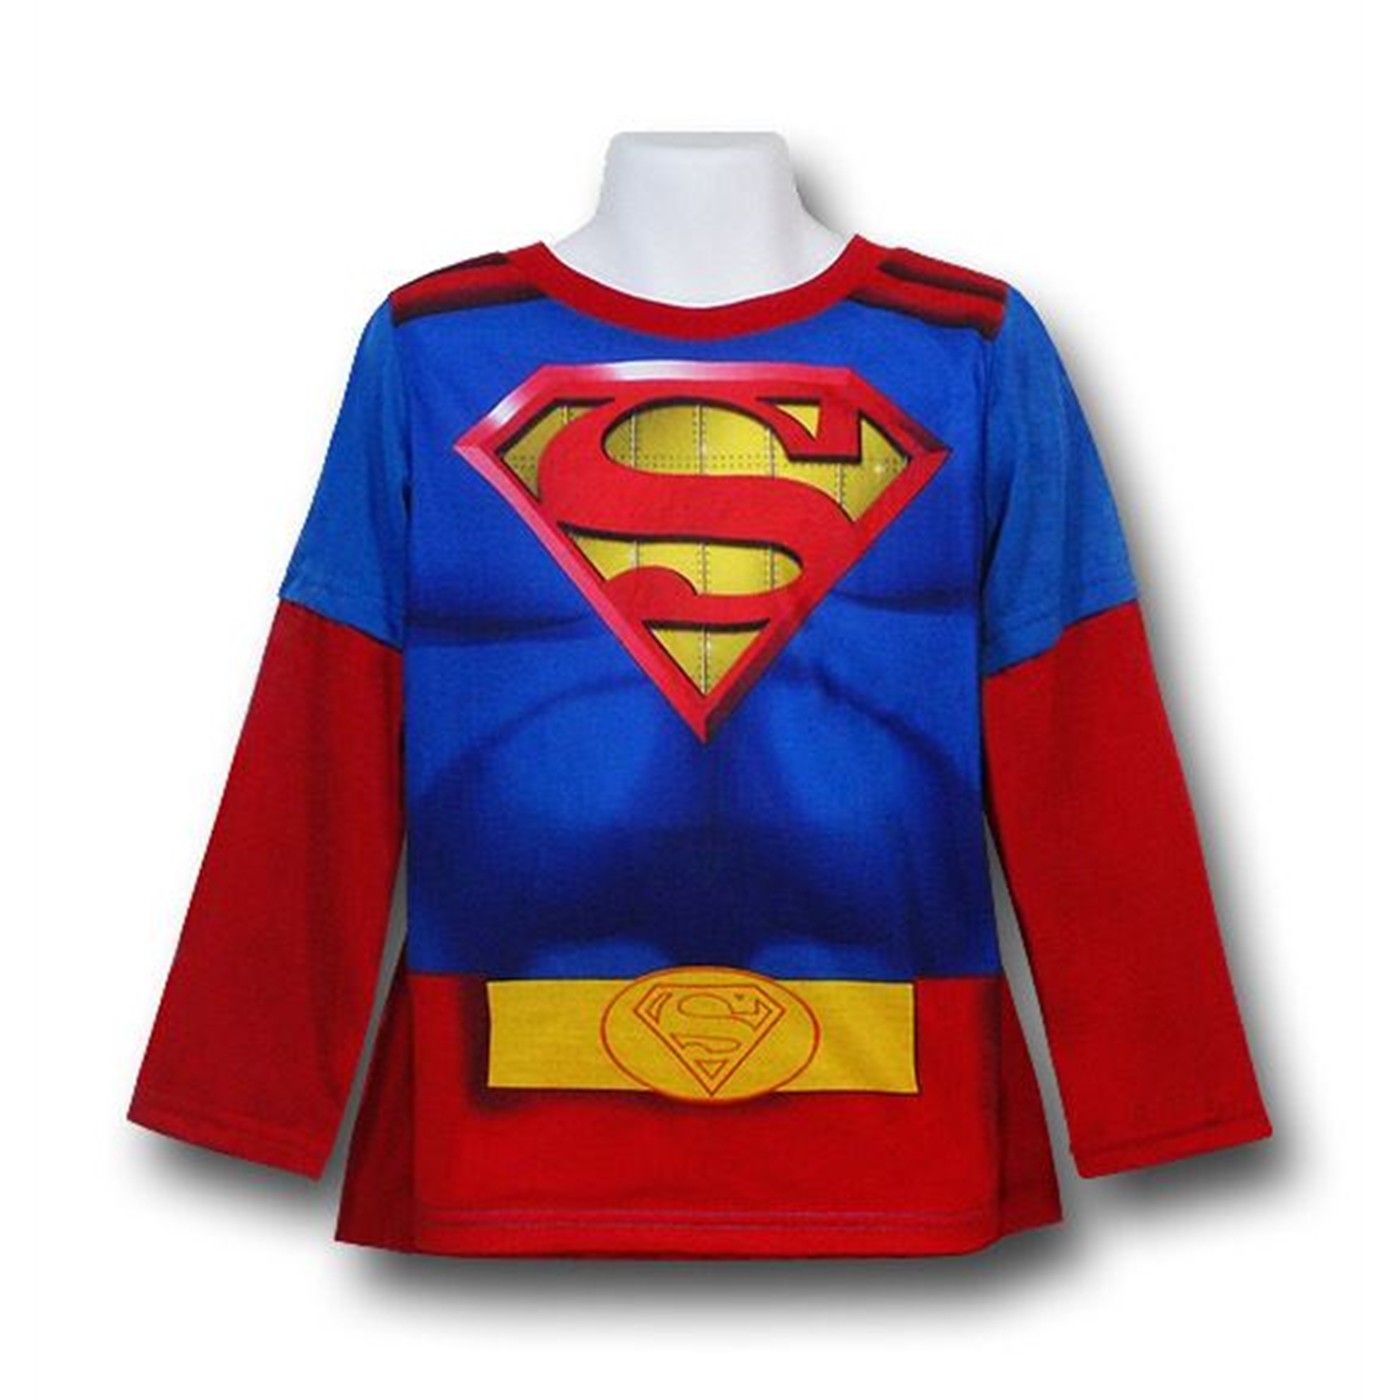 Superman Kids Costume Riveted Pajama Set w/Cape